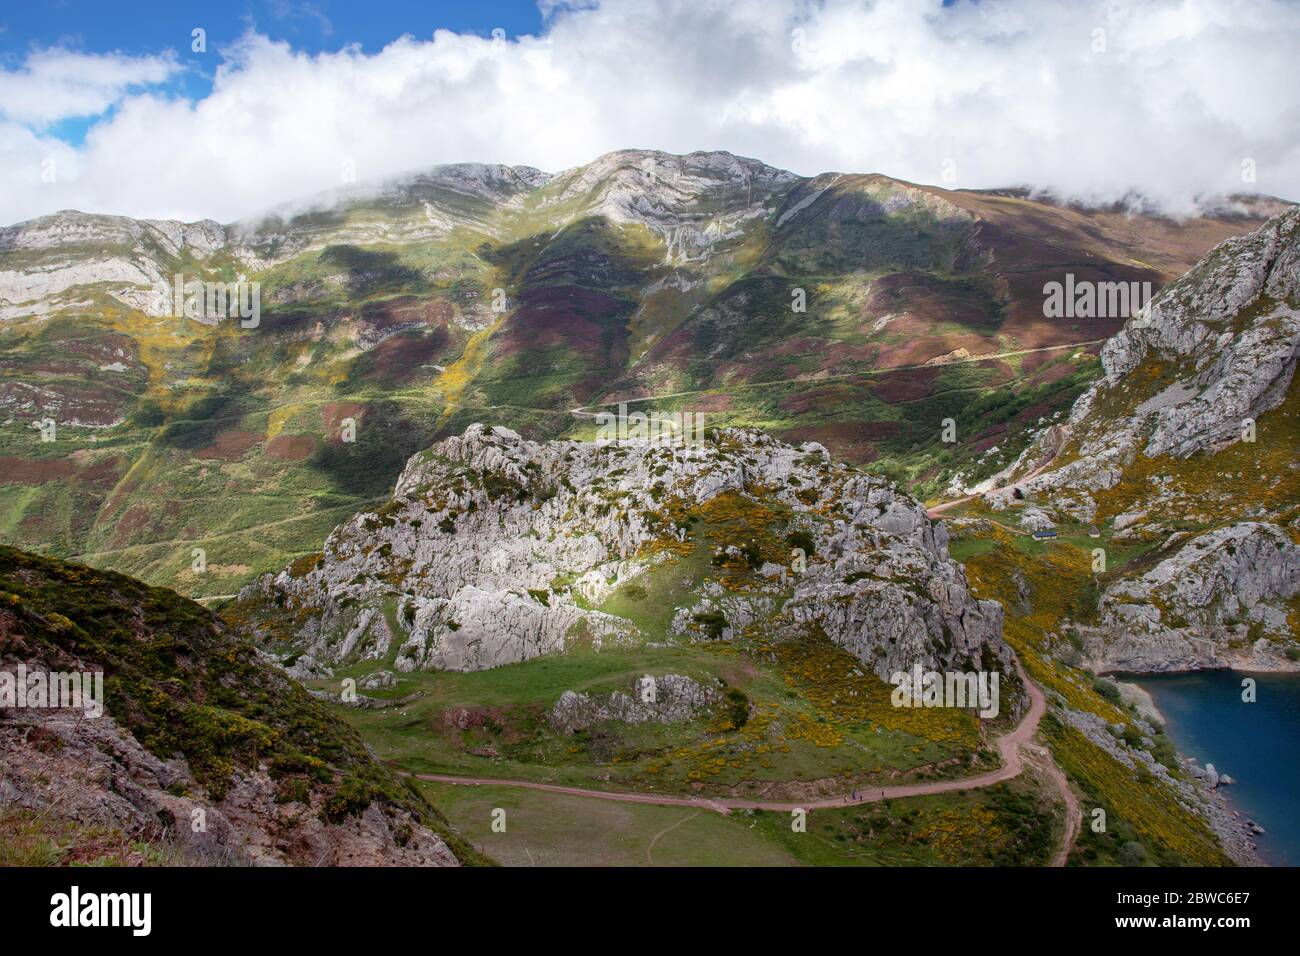 Sentiero escursionistico nel parco nazionale di Somiedo, Spagna, Asturie. Riserva naturale dei laghi di Saliencia. Ambiente naturale mozzafiato. Foto Stock